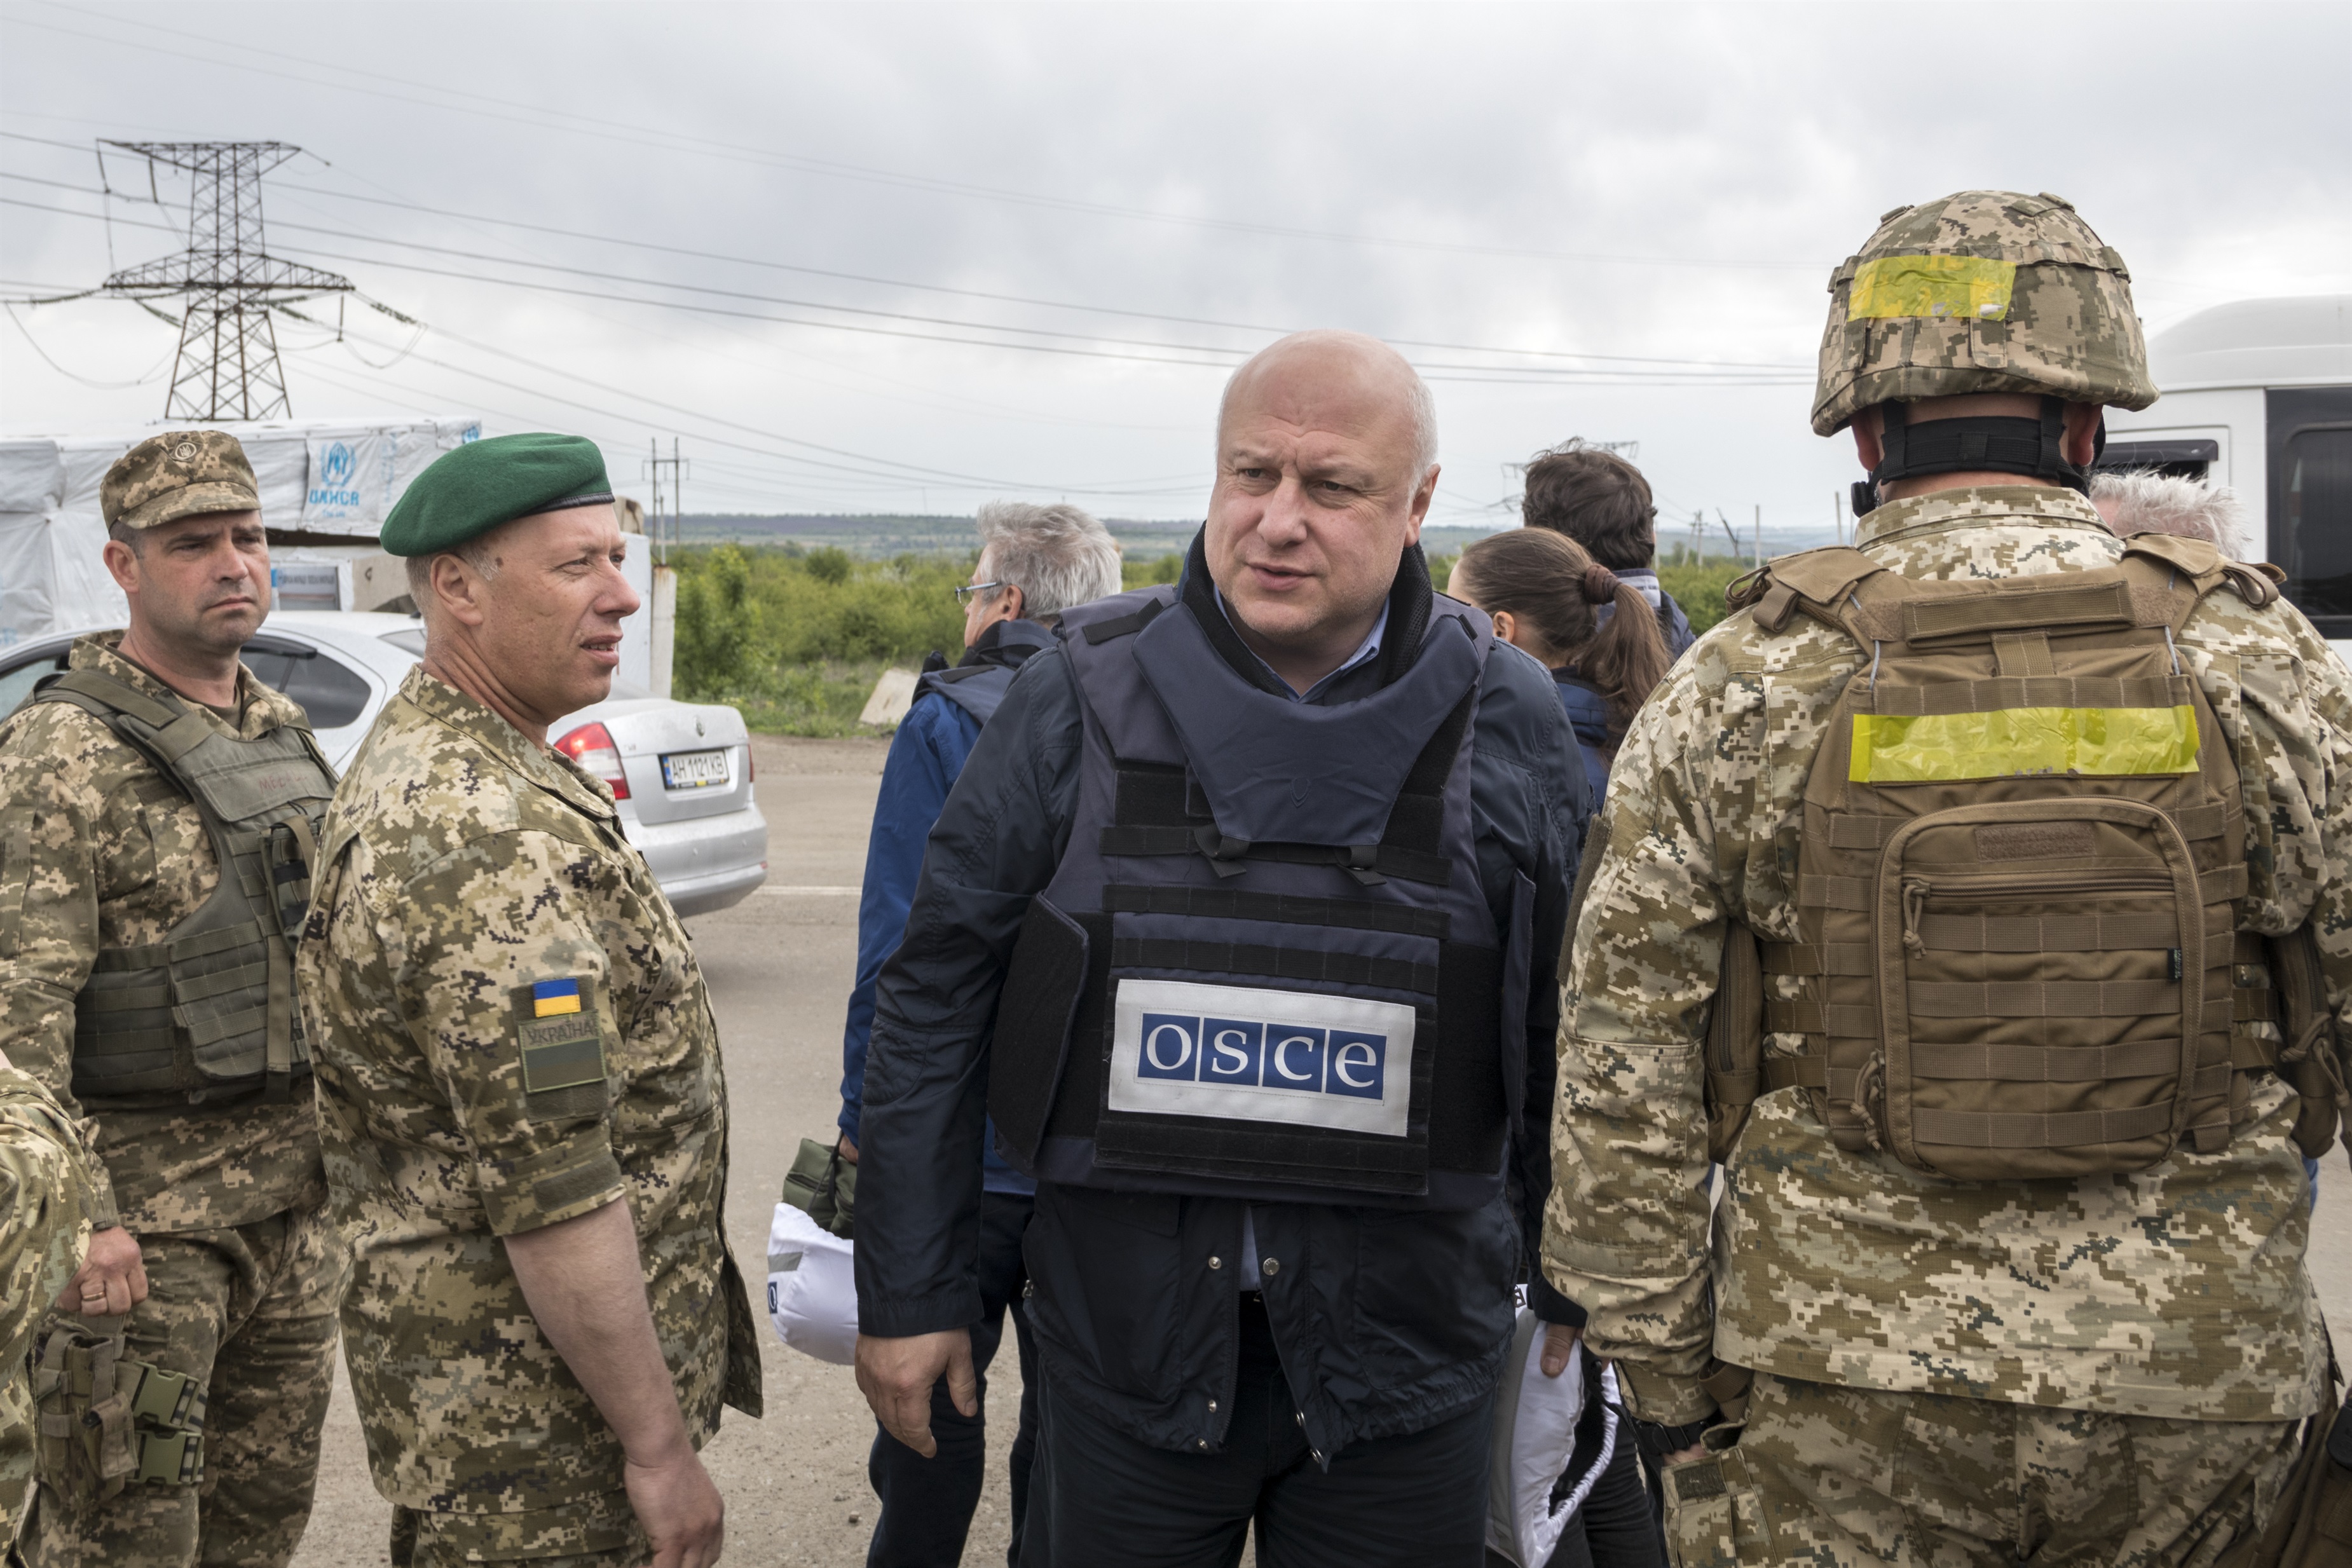 La OSCE desplegó su misión de control de la paz en Ucrania en 2014 tras la anexión rusa de la península de Crimea